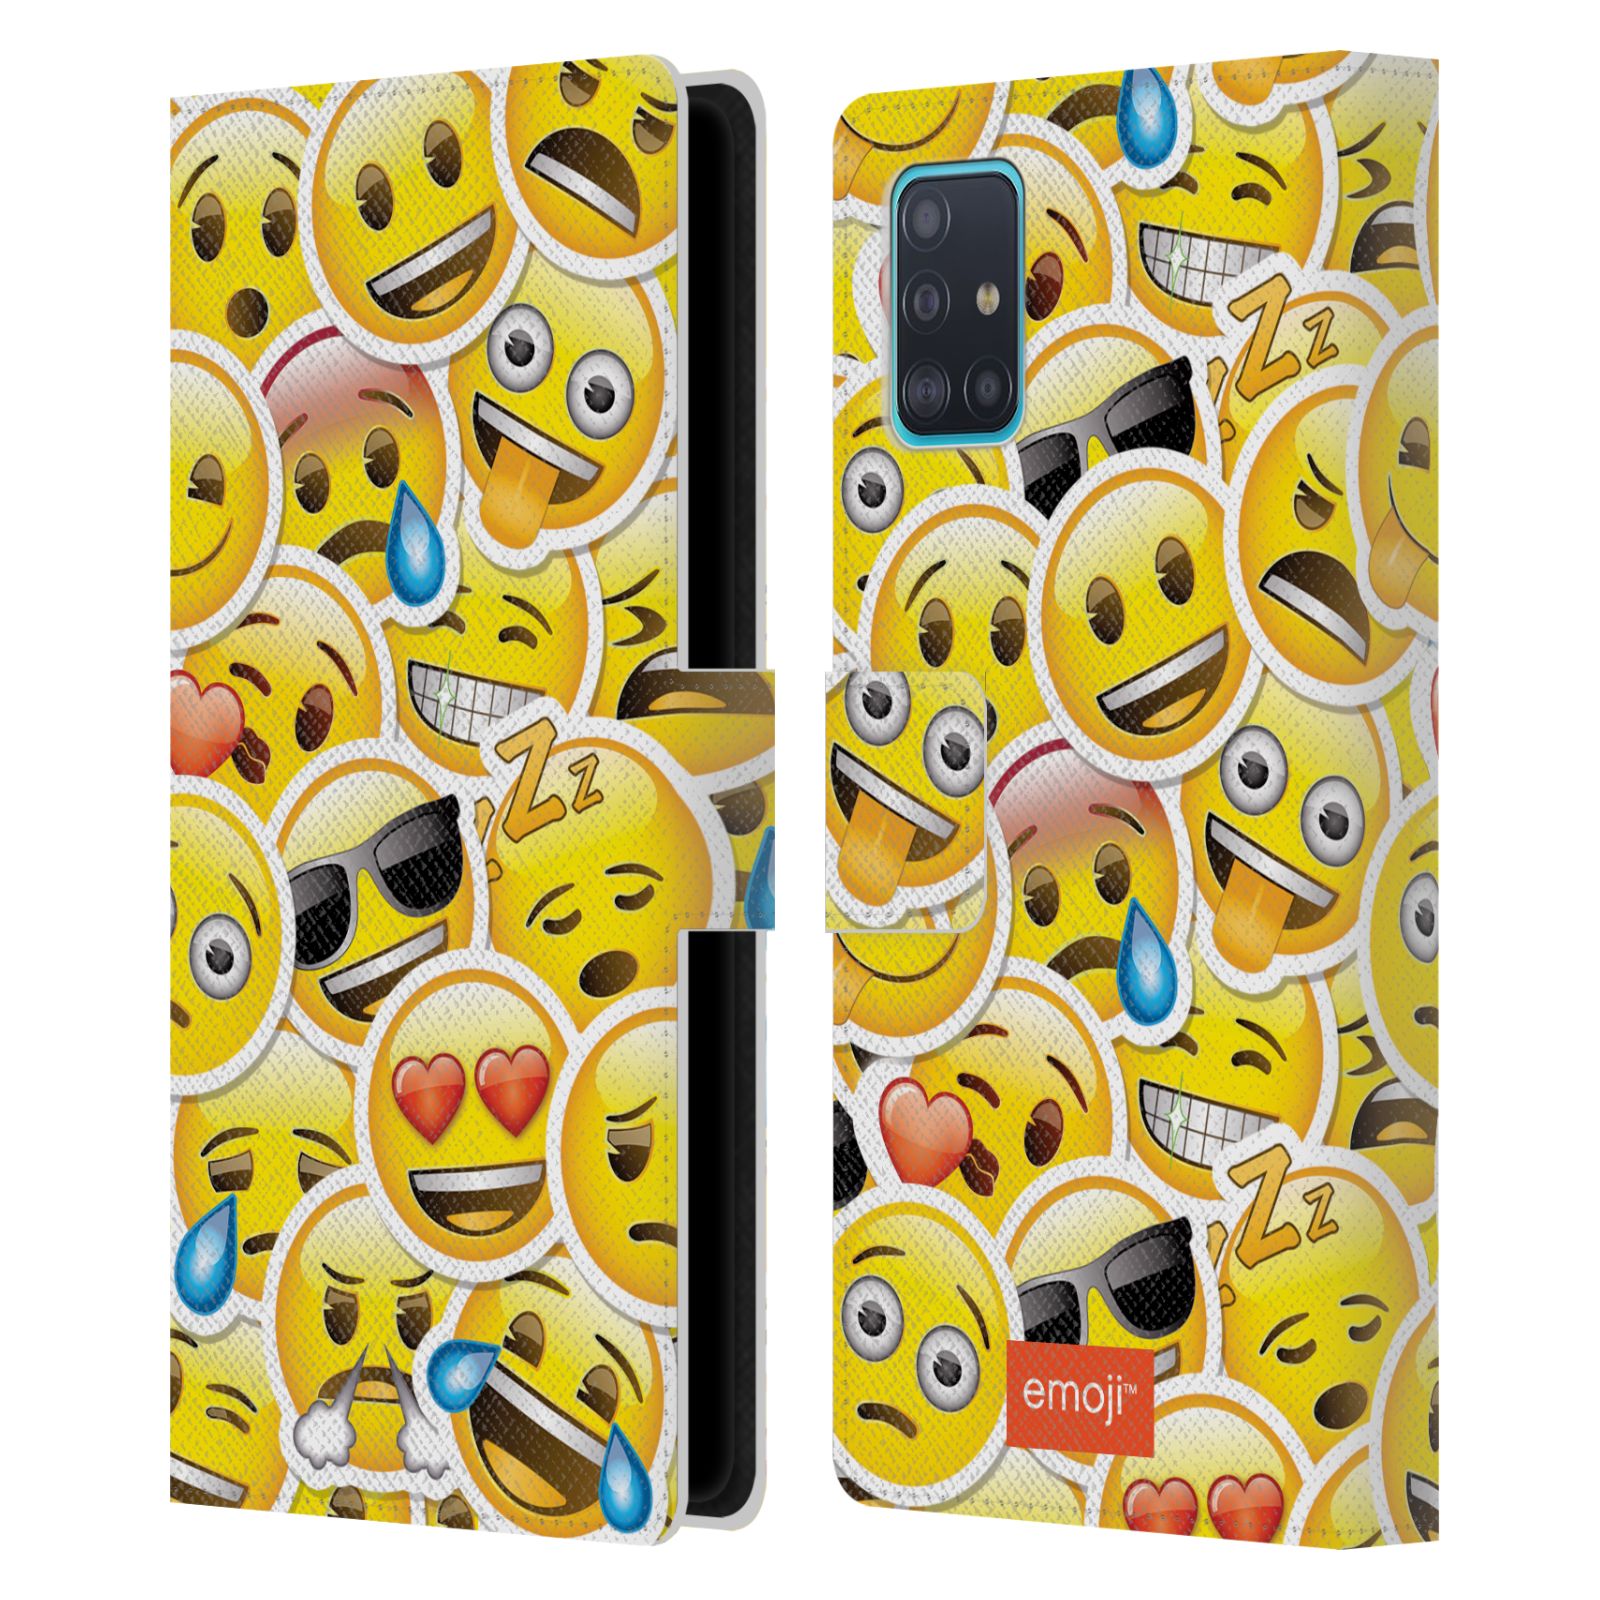 Pouzdro na mobil Samsung Galaxy A51 (A515F) - Head Case - Emoji velcí smajlíci